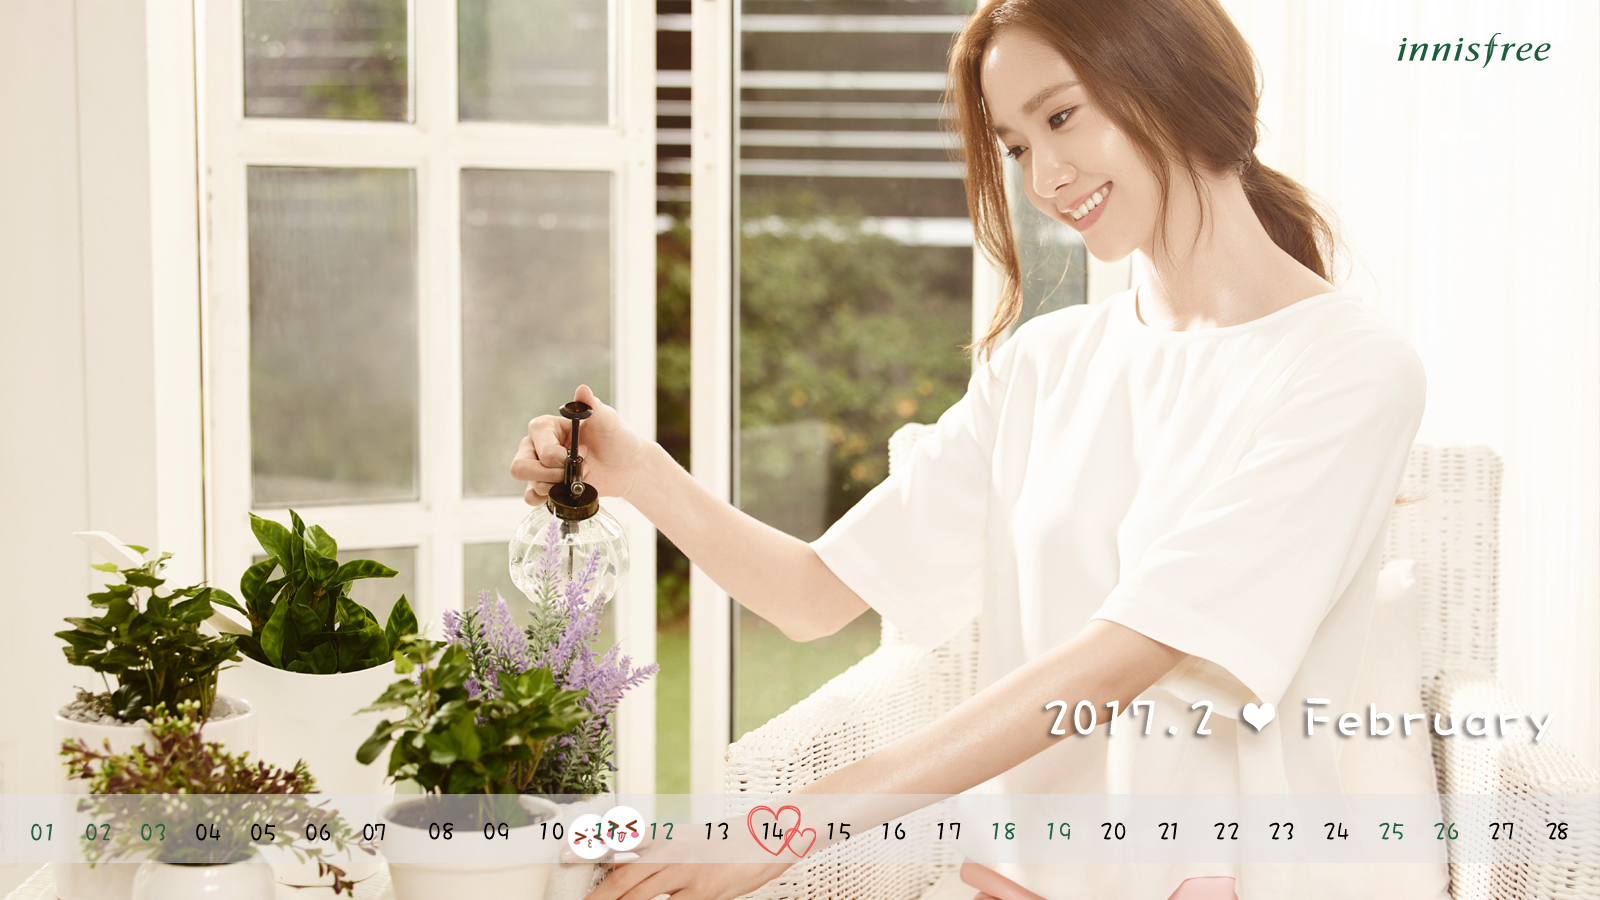 [OTHER][21-07-2012]Hình ảnh mới nhất từ thương hiệu "Innisfree" của YoonA - Page 17 32243121320_c9d1c83663_o